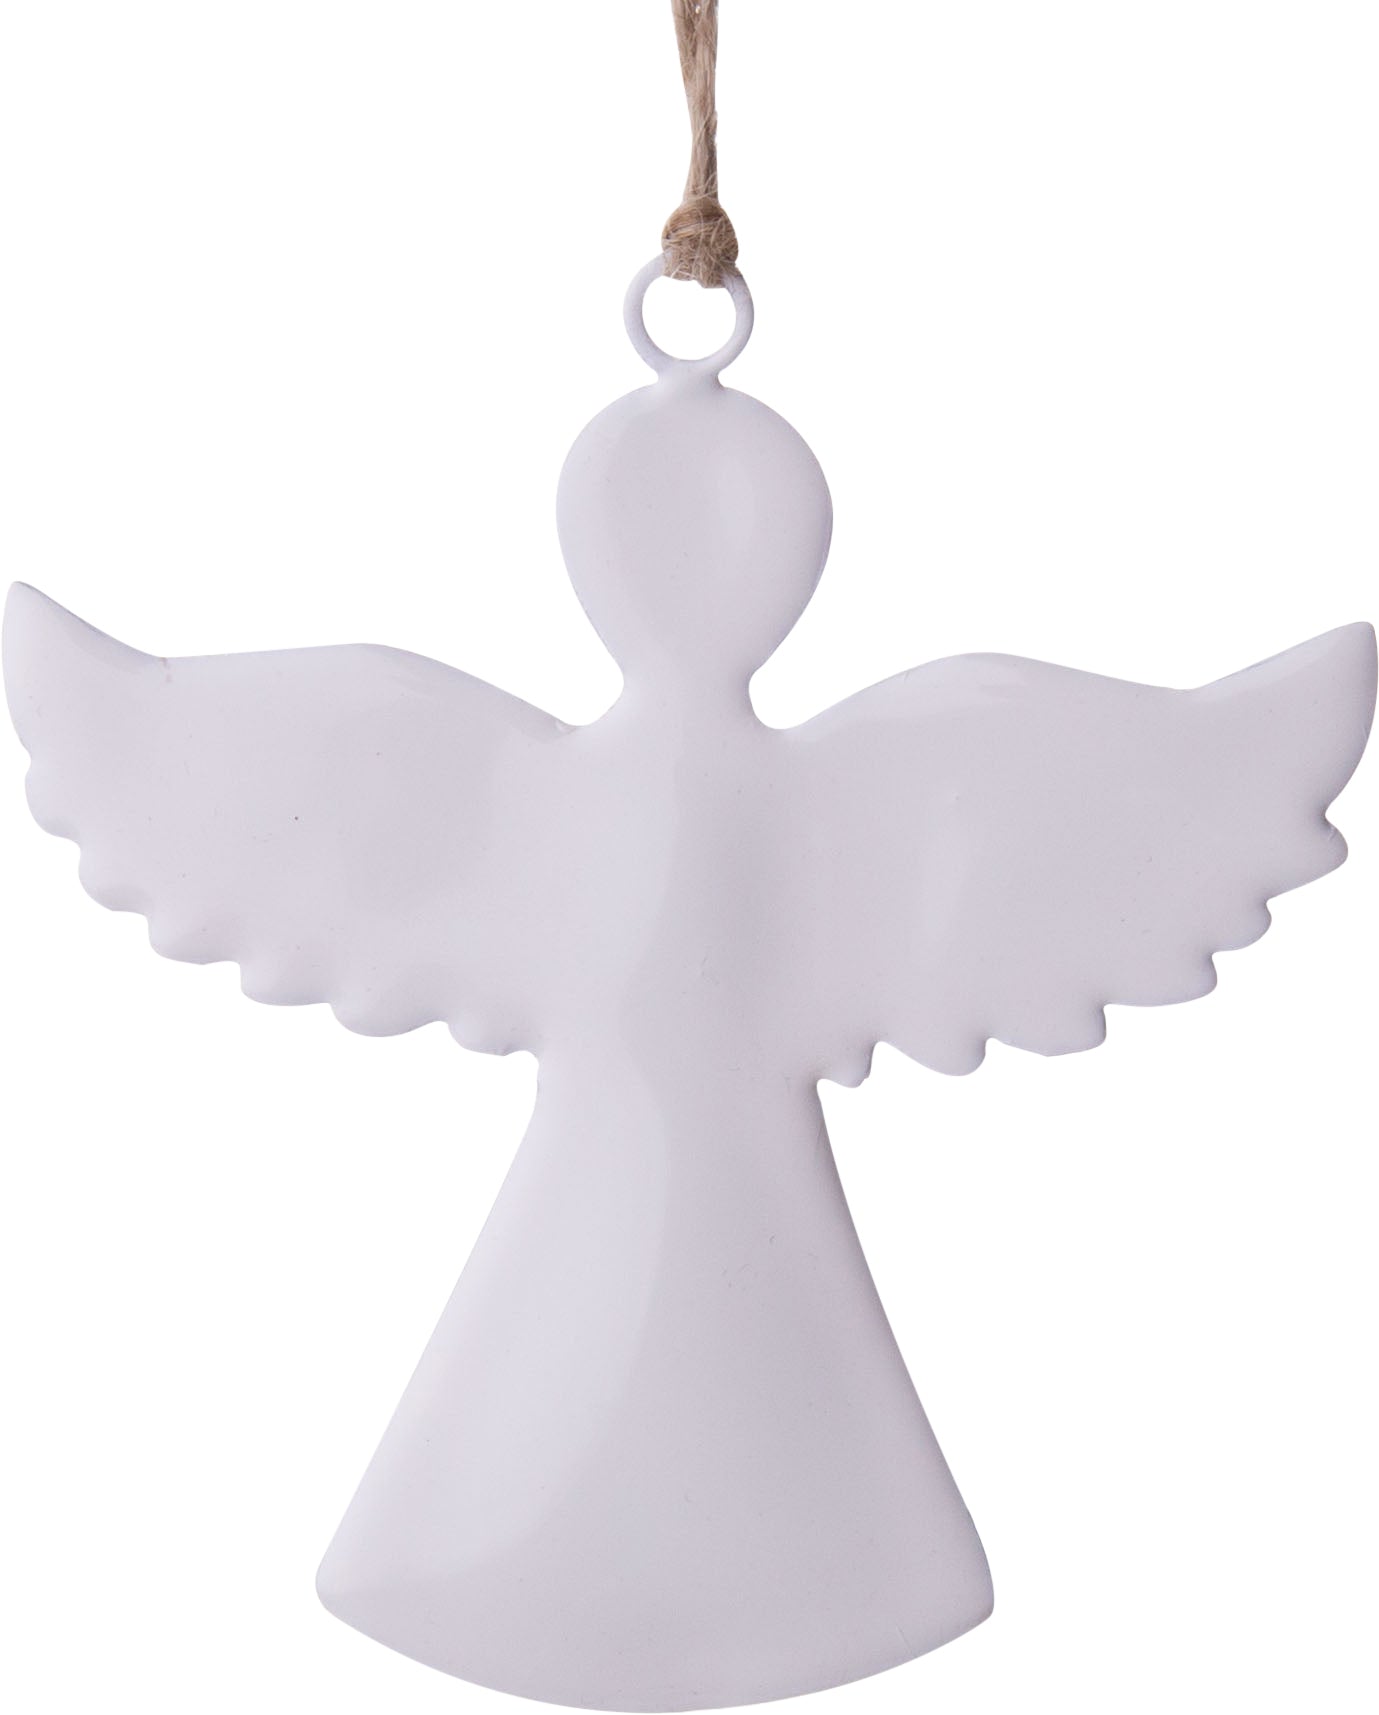 Angel Silhouette Enamel Ornament